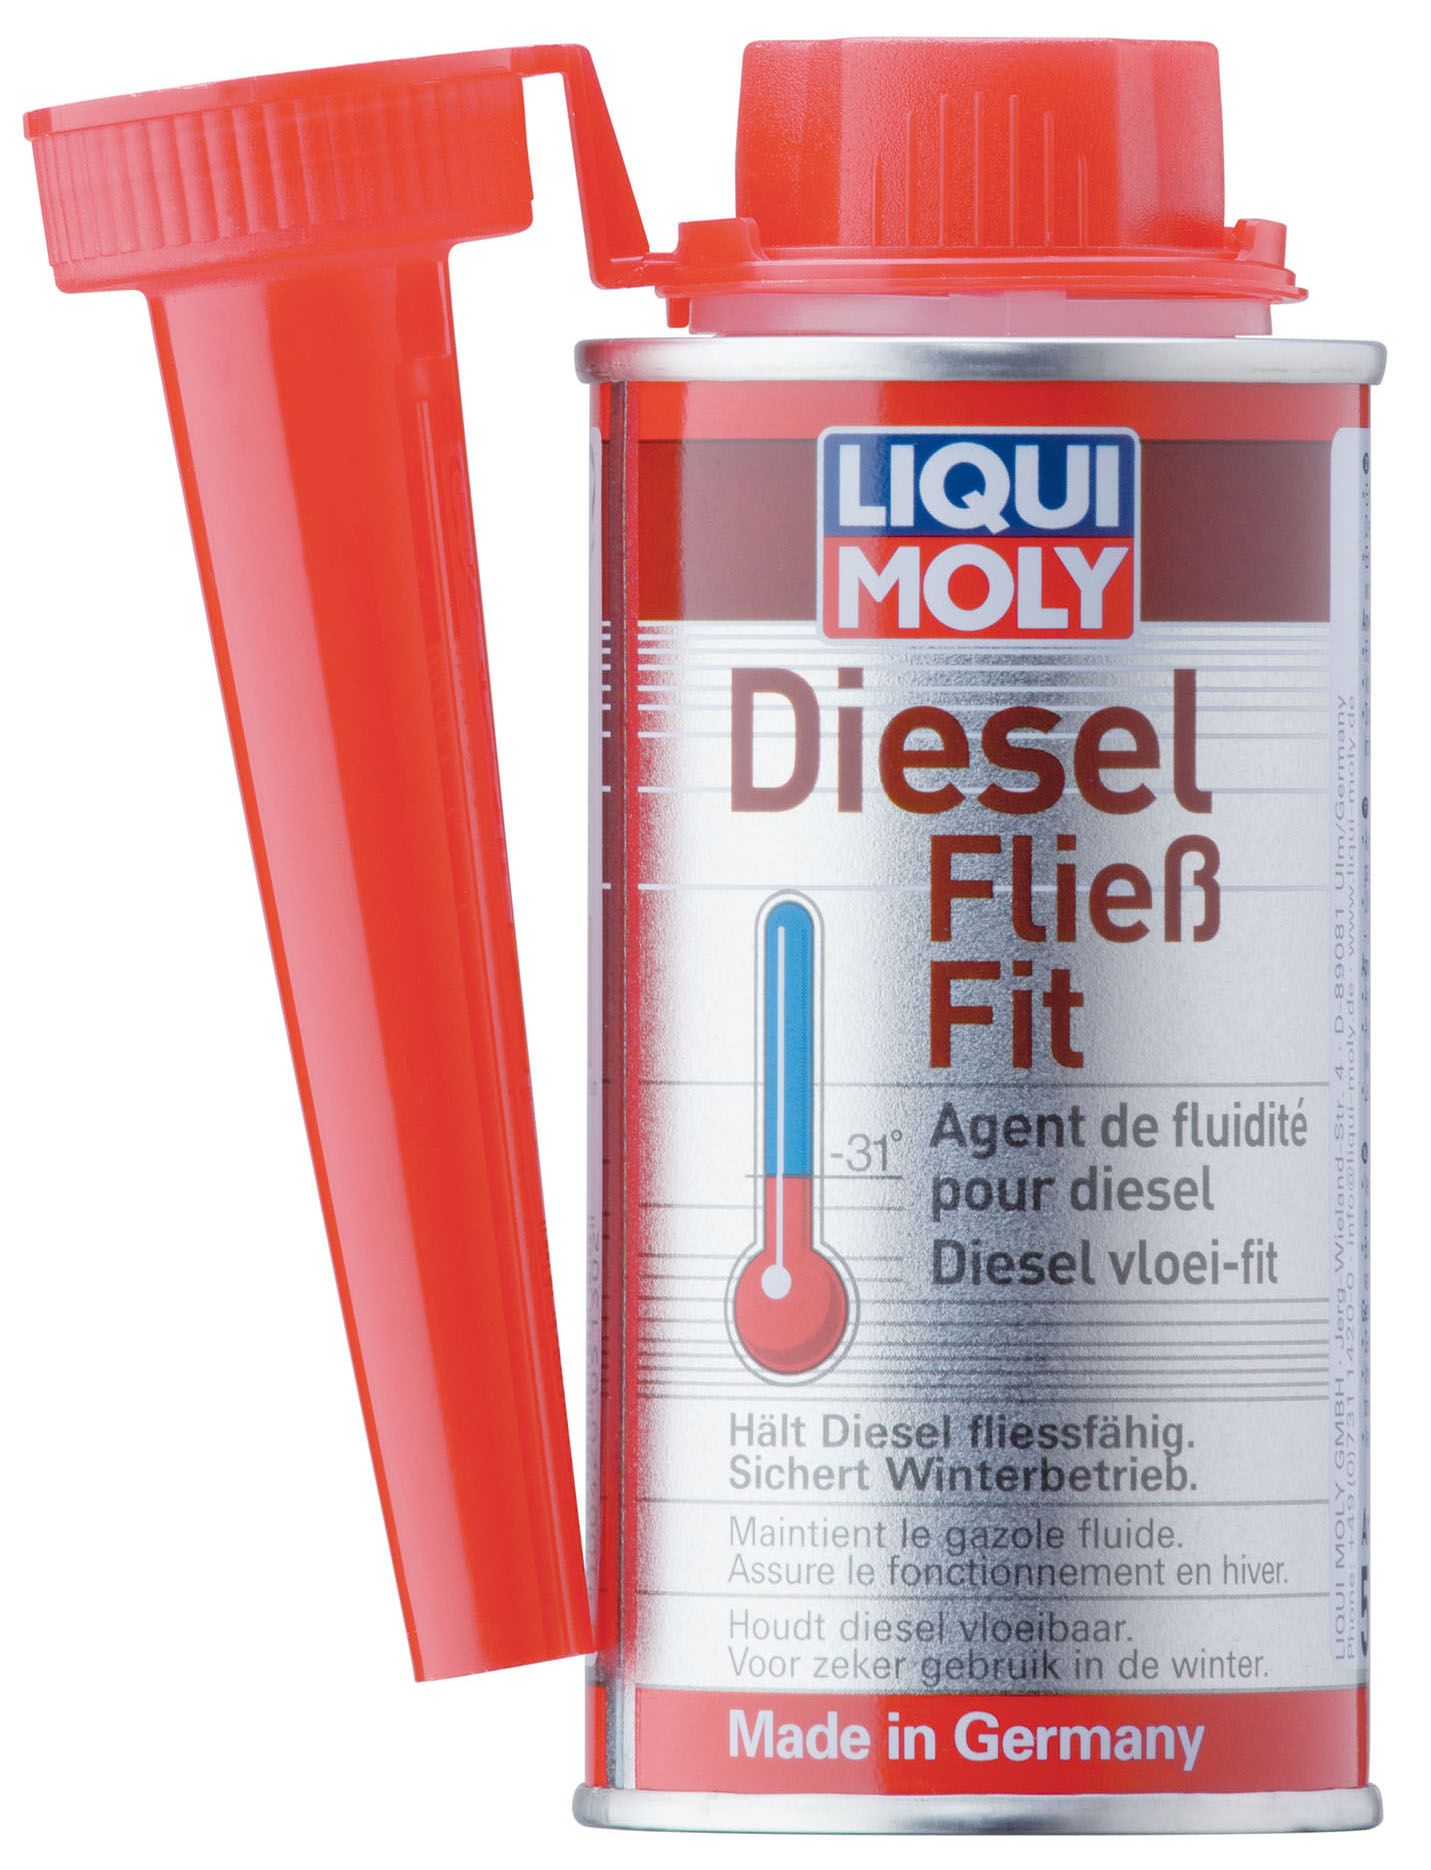 Diesel Fließ-Fit - Diesel Fließ-Fit